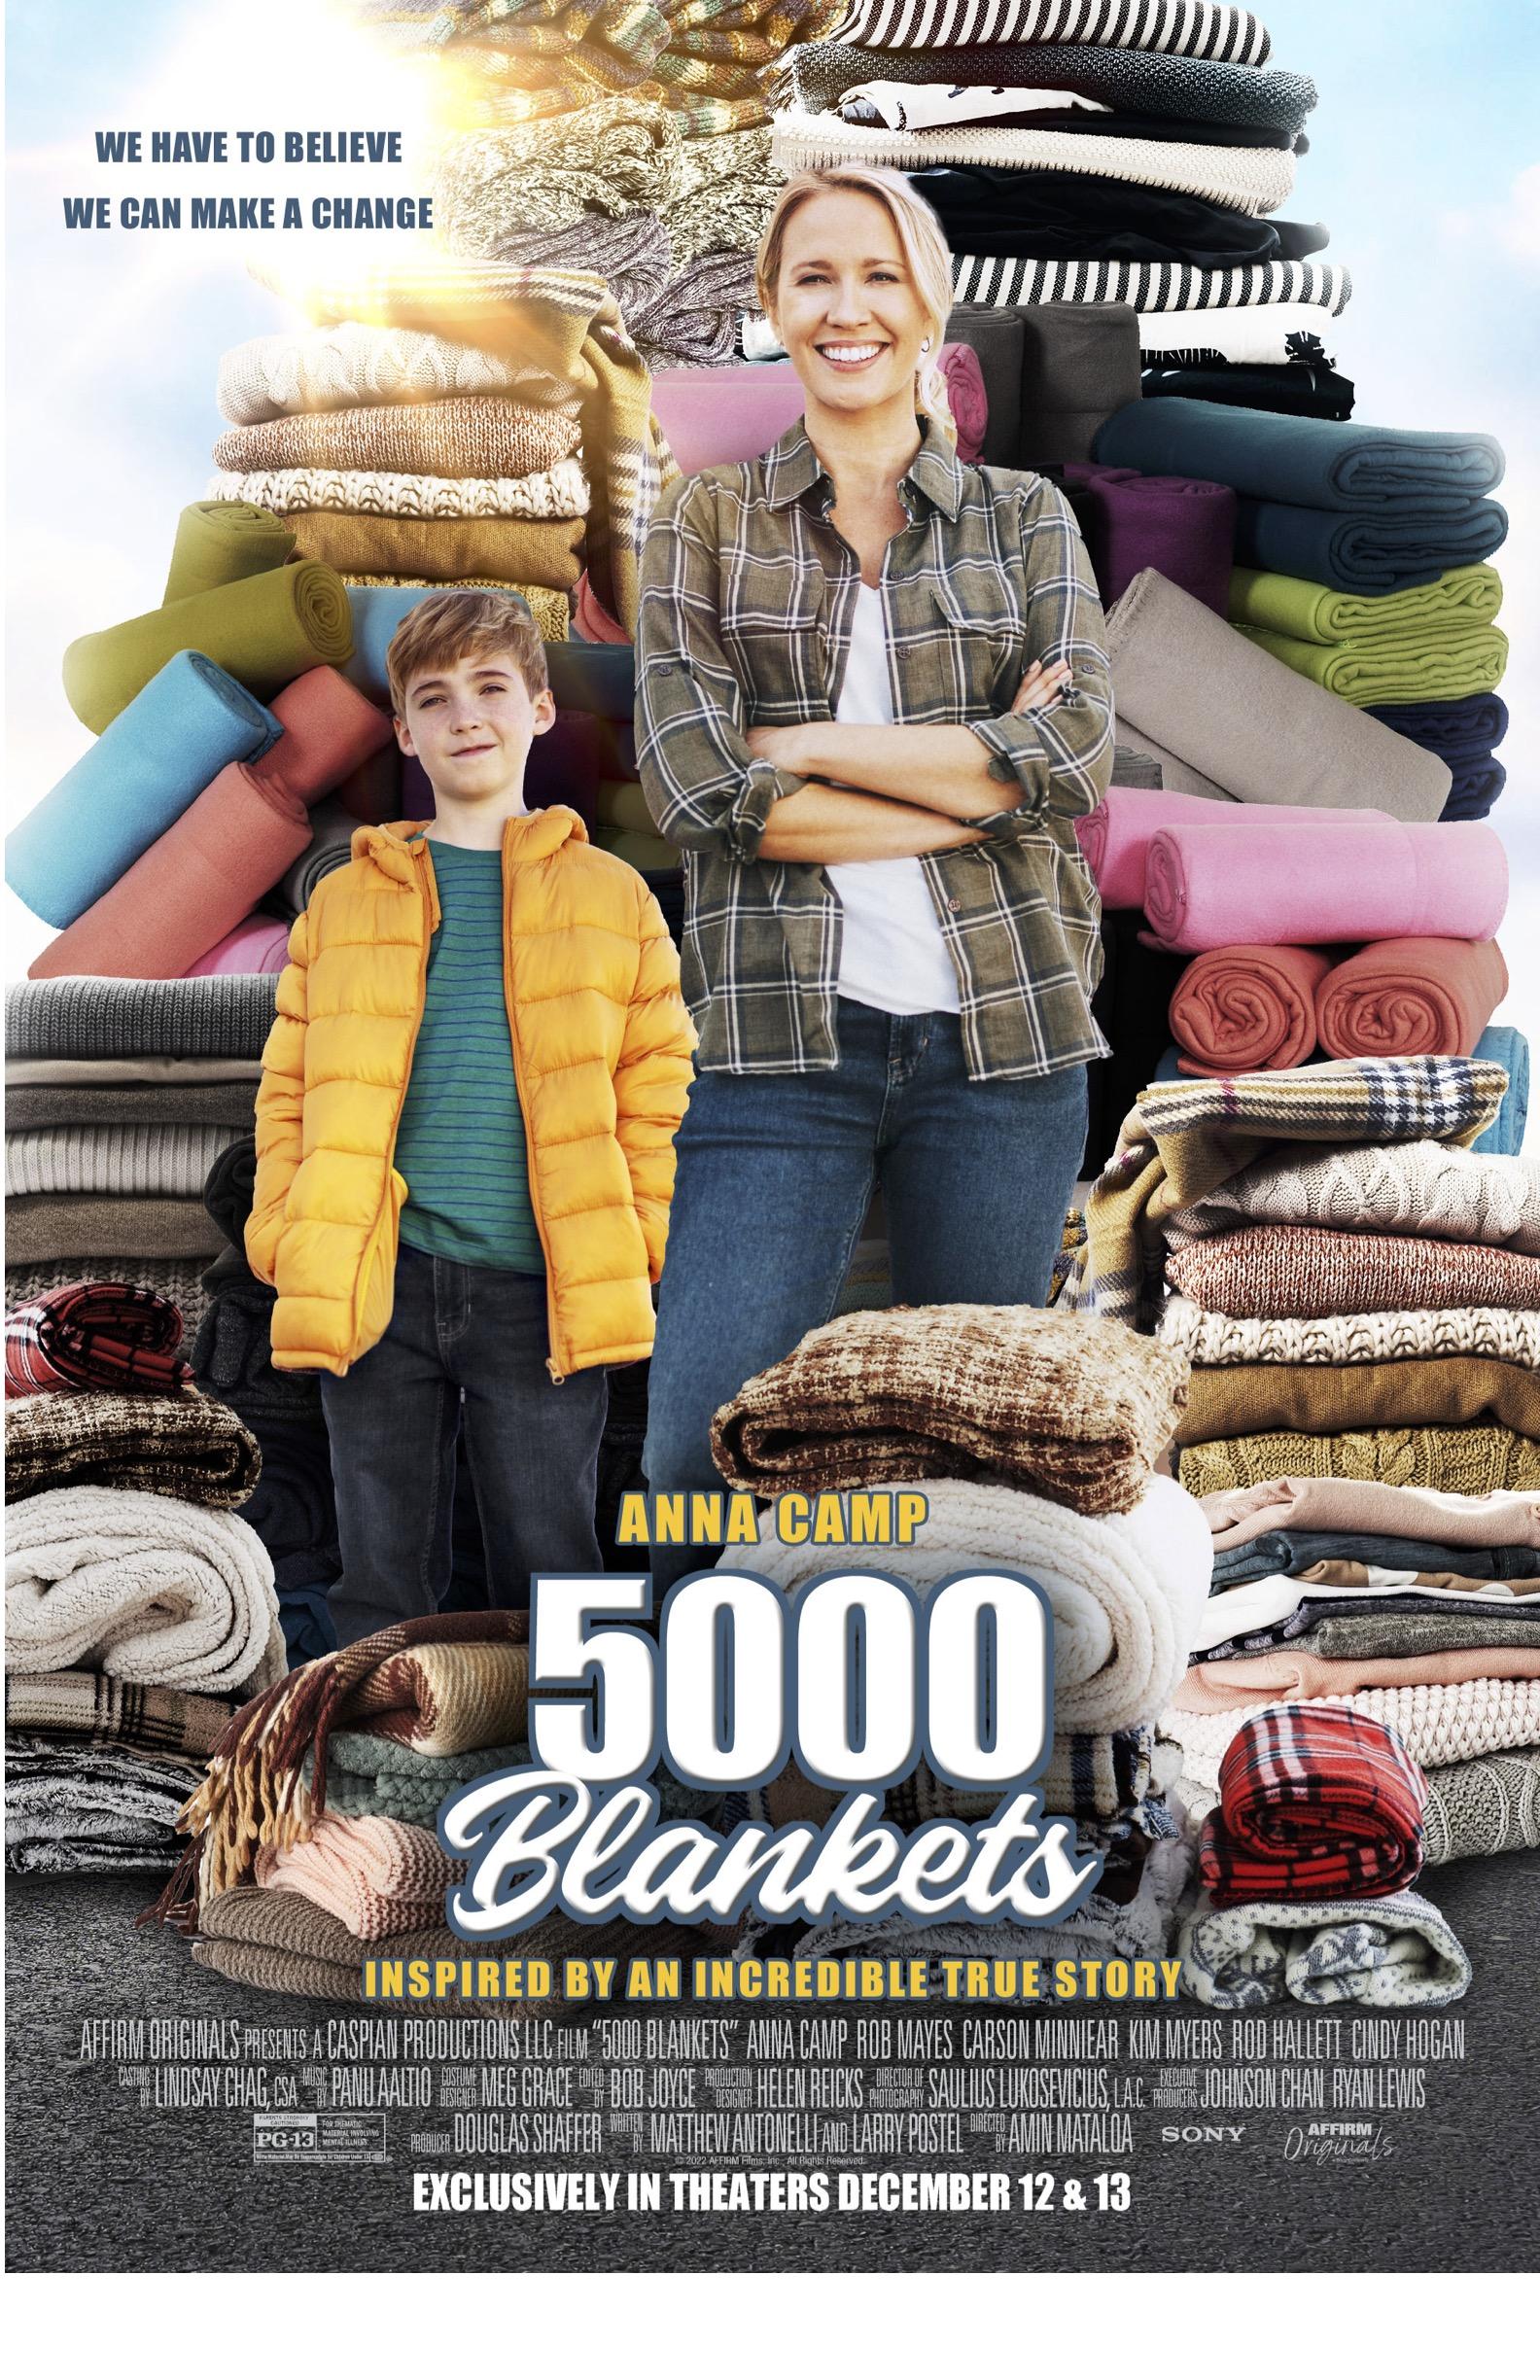 Cover Art for "5000 Blankets"